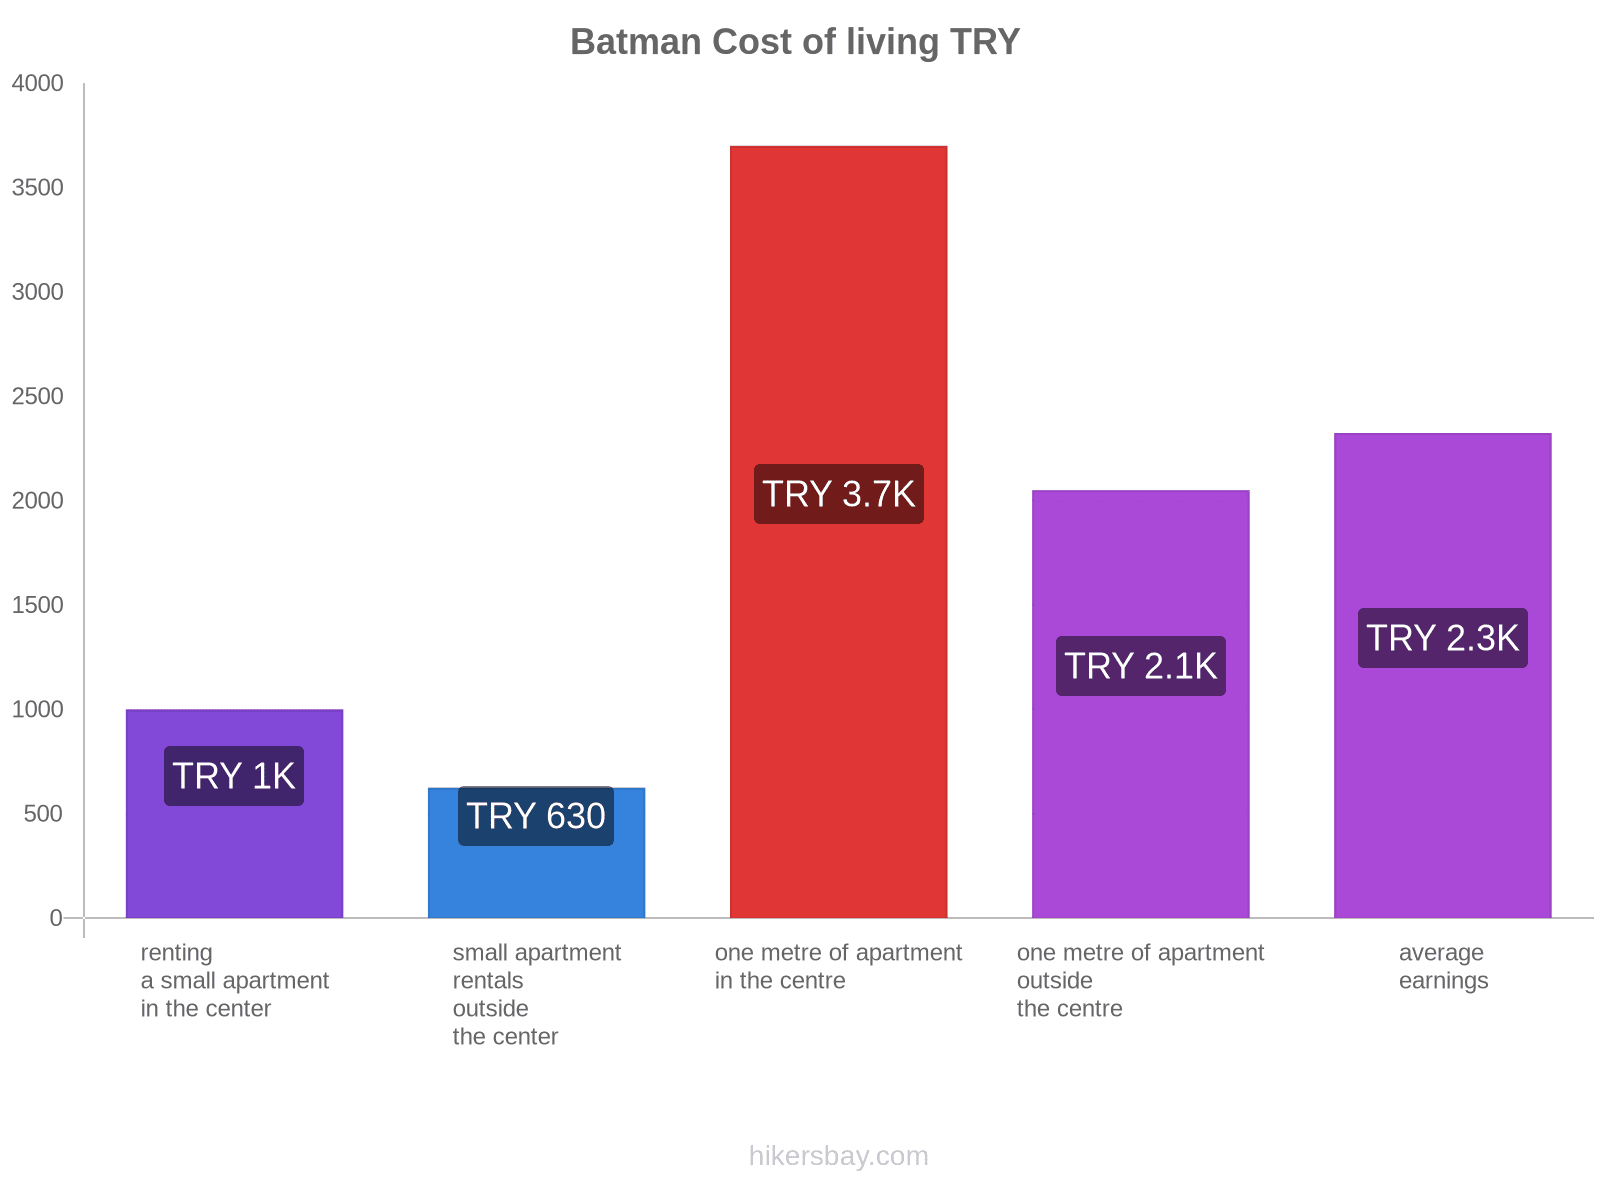 Batman cost of living hikersbay.com